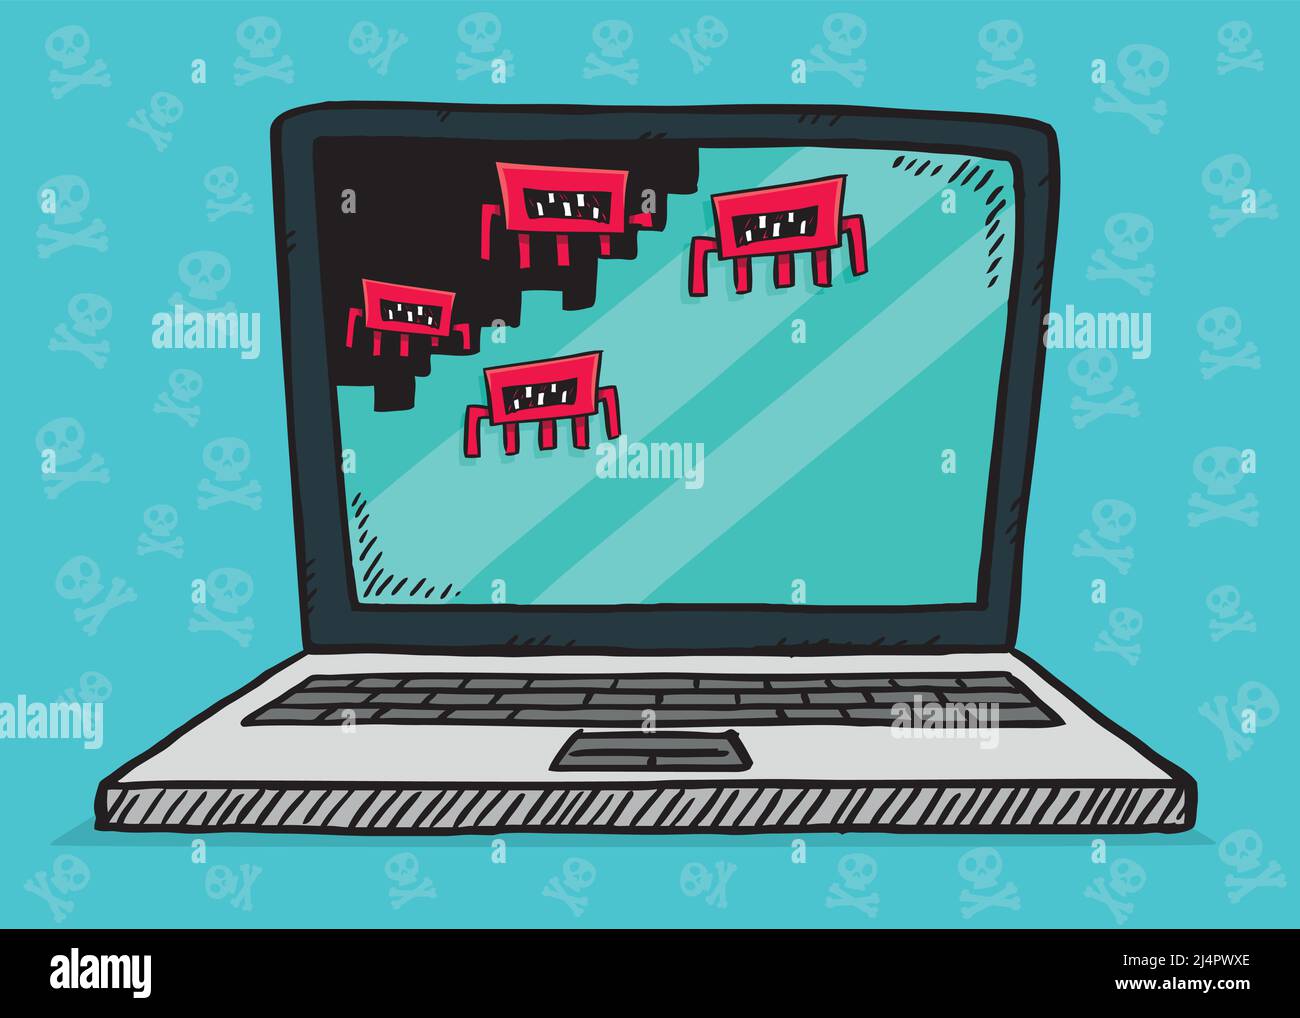 Illustrazione disegnata a mano di un laptop attaccato da virus informatici che cancellano la sua memoria. Vettore di stile di schizzo. Illustrazione Vettoriale